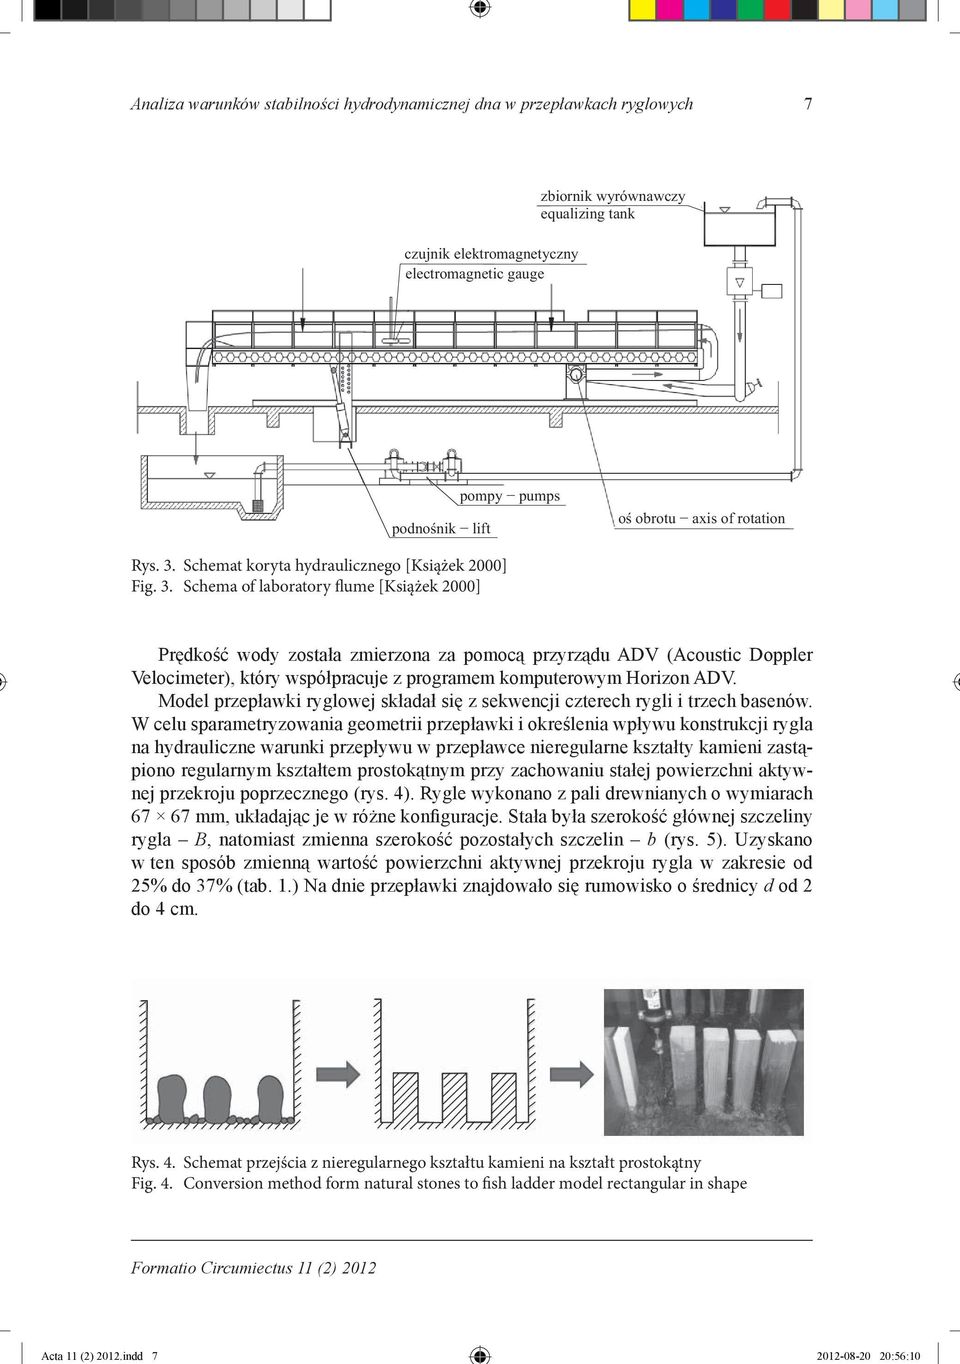 Schema of laboratory flume [Książek 2000] Prędkość wody została zmierzona za pomocą przyrządu ADV (Acoustic Doppler Velocimeter), który współpracuje z programem komputerowym Horizon ADV.